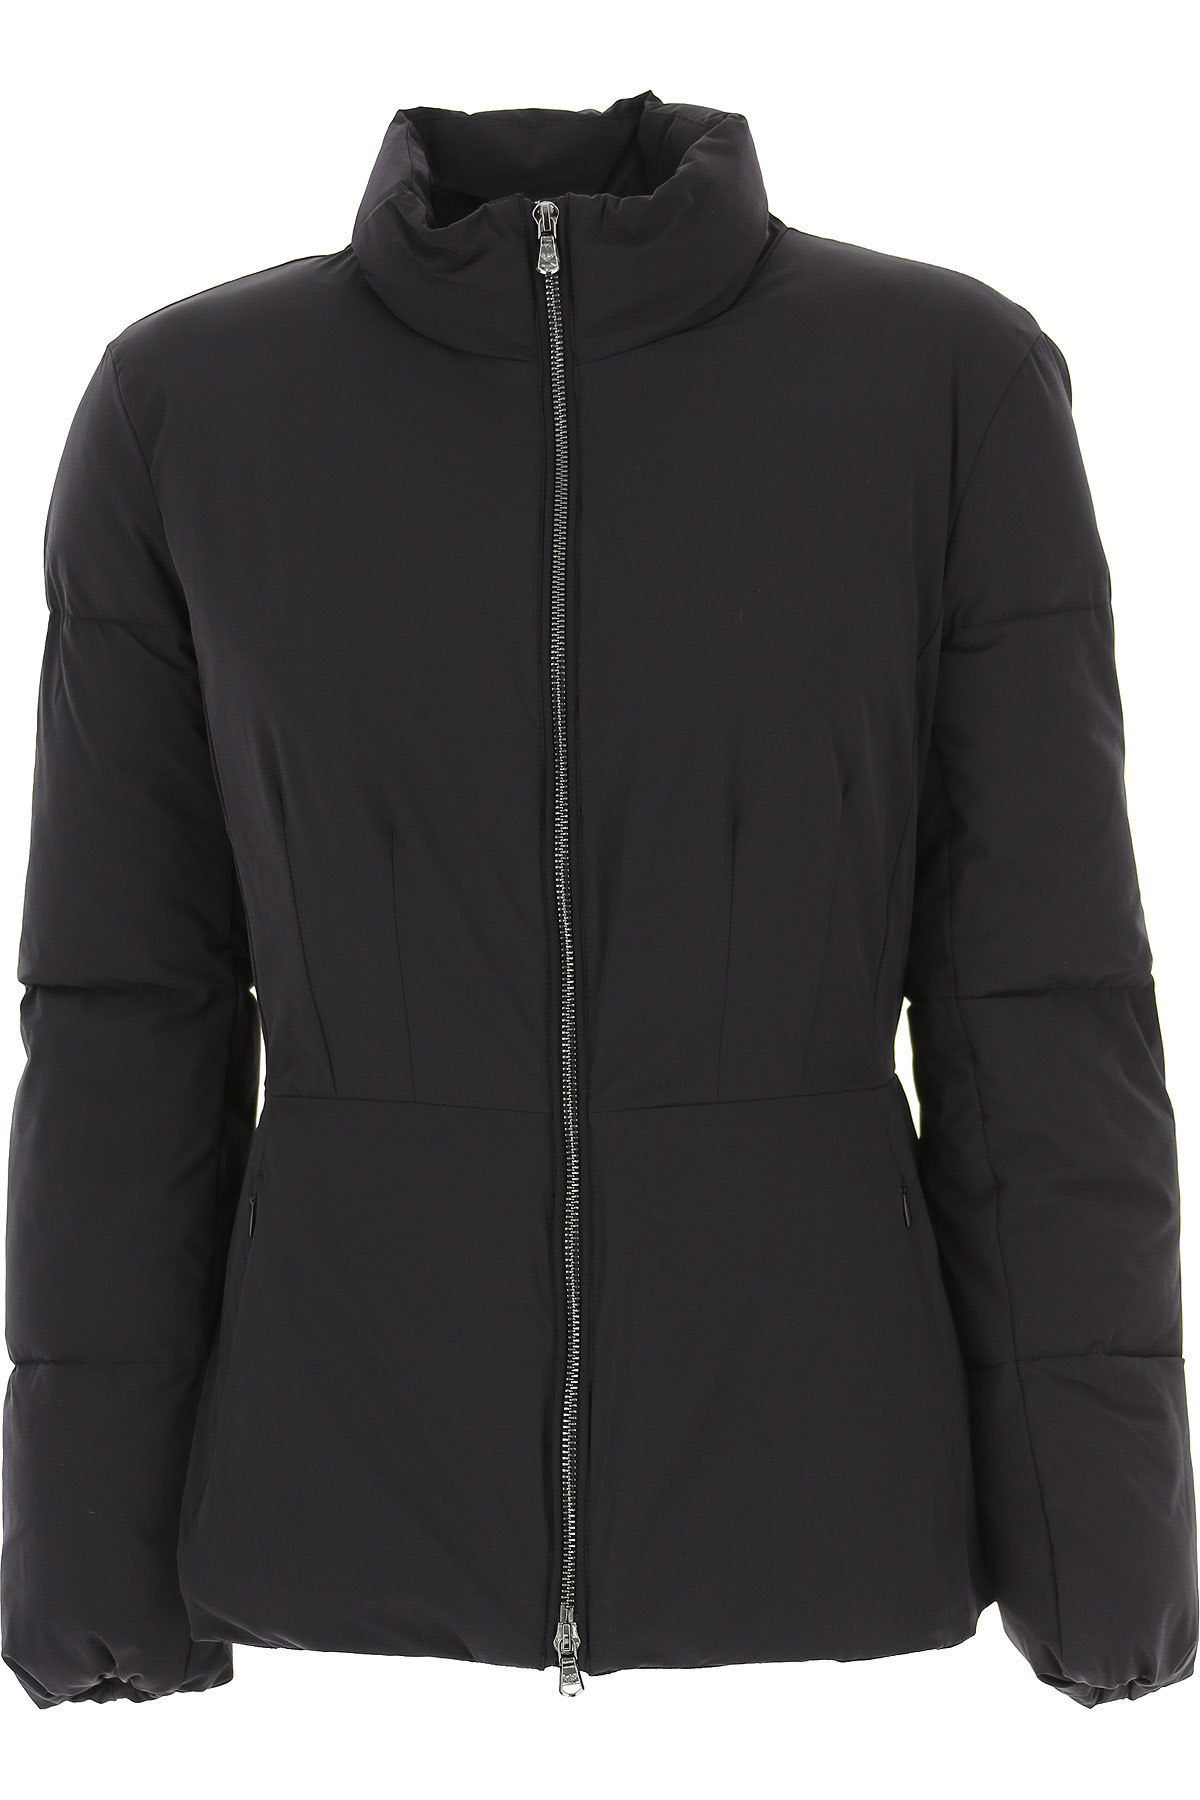 Emporio Armani Jacke für Damen Günstig im Sale, Schwarz, Polyester, 2017, 40 44 M